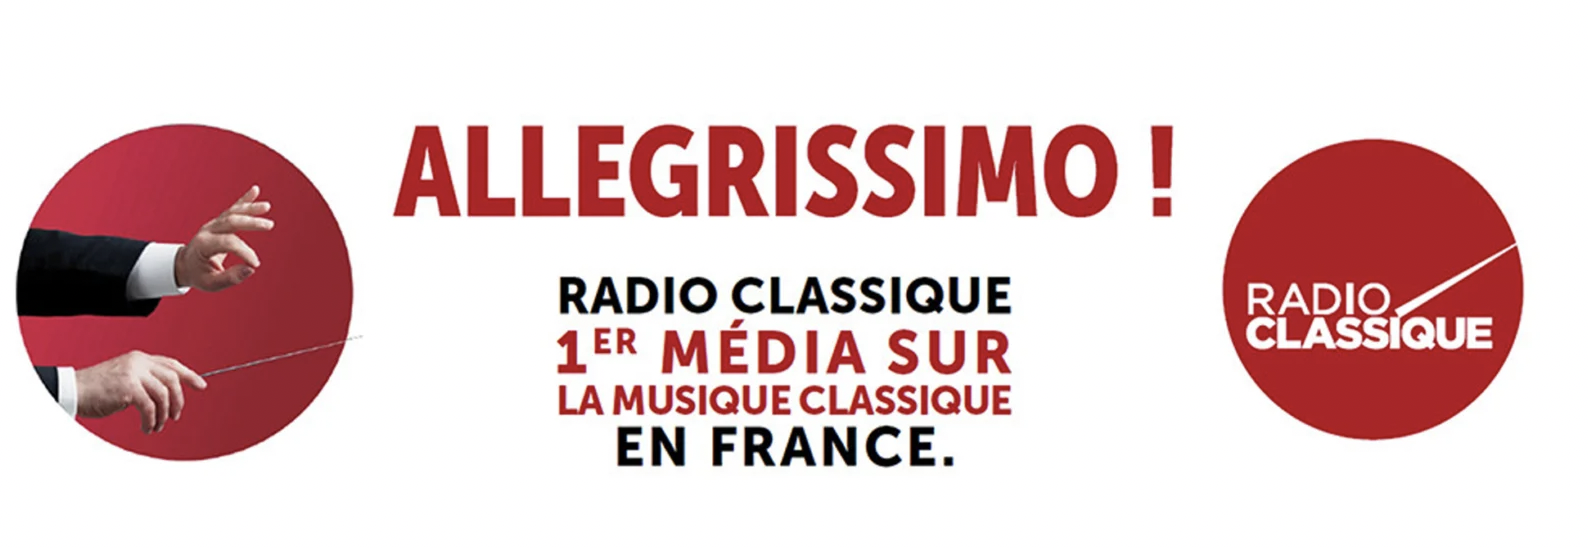 Radio Classique : "1er média sur la musique classique"